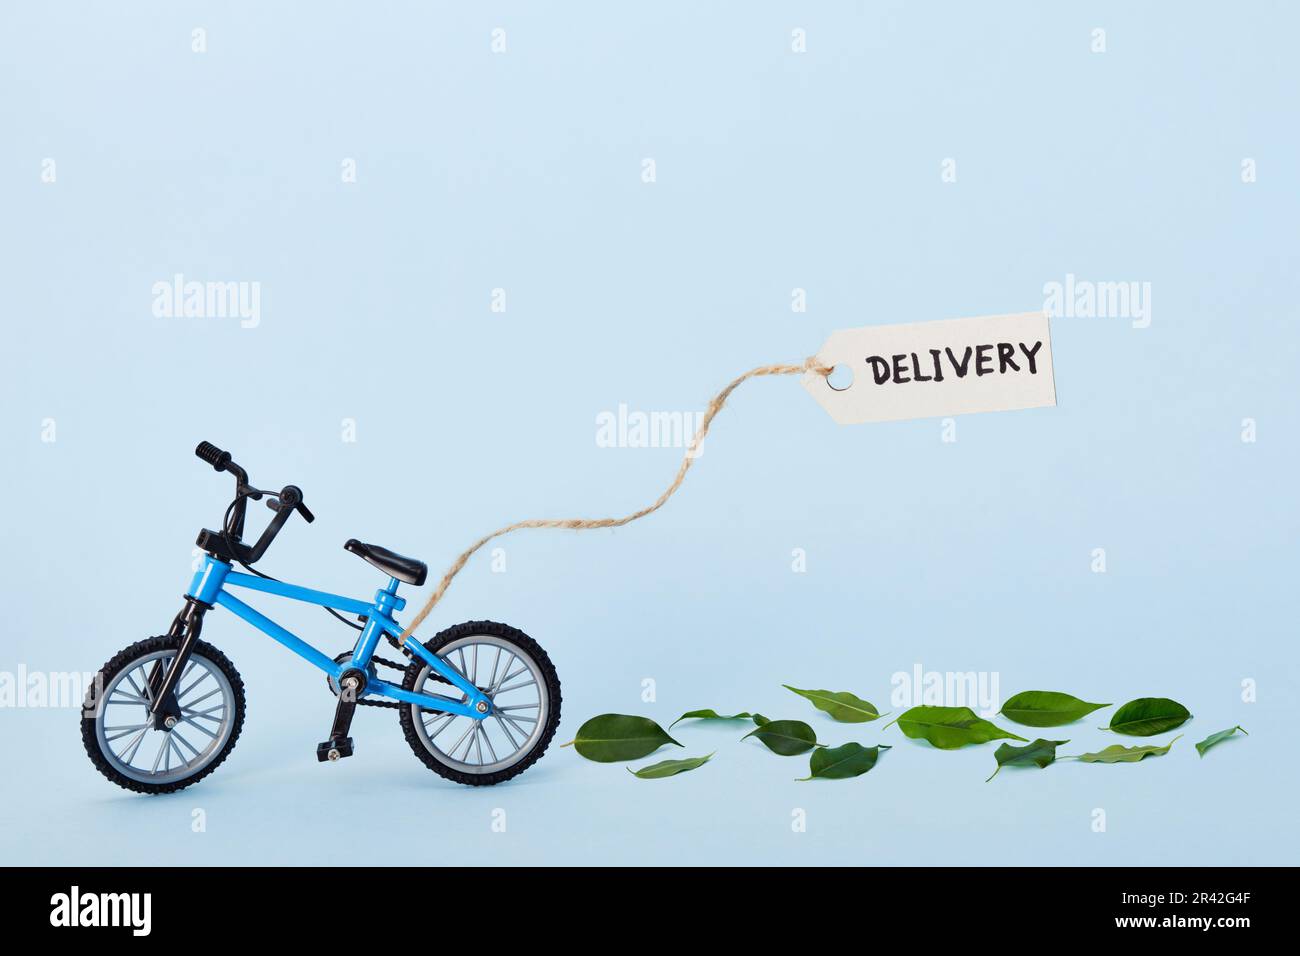 Concetto creativo di eco-consegna. Bicicletta che emette foglie verdi ed etichetta con testo di consegna su sfondo blu Foto Stock